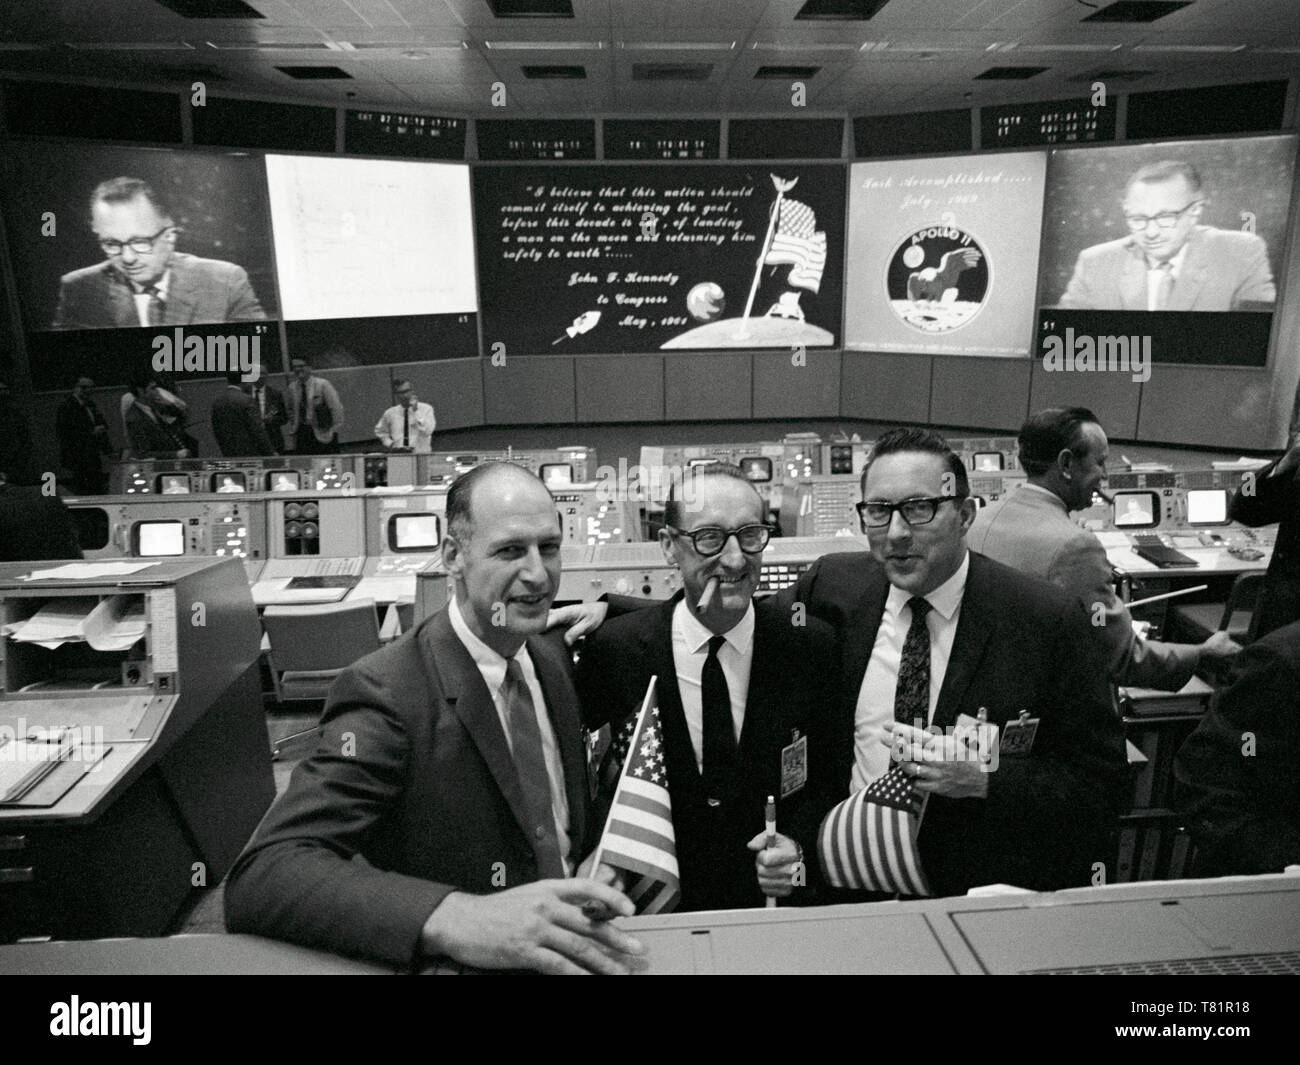 Apollo 11, NASA Celebrates Moon Landing, 1969 Stock Photo